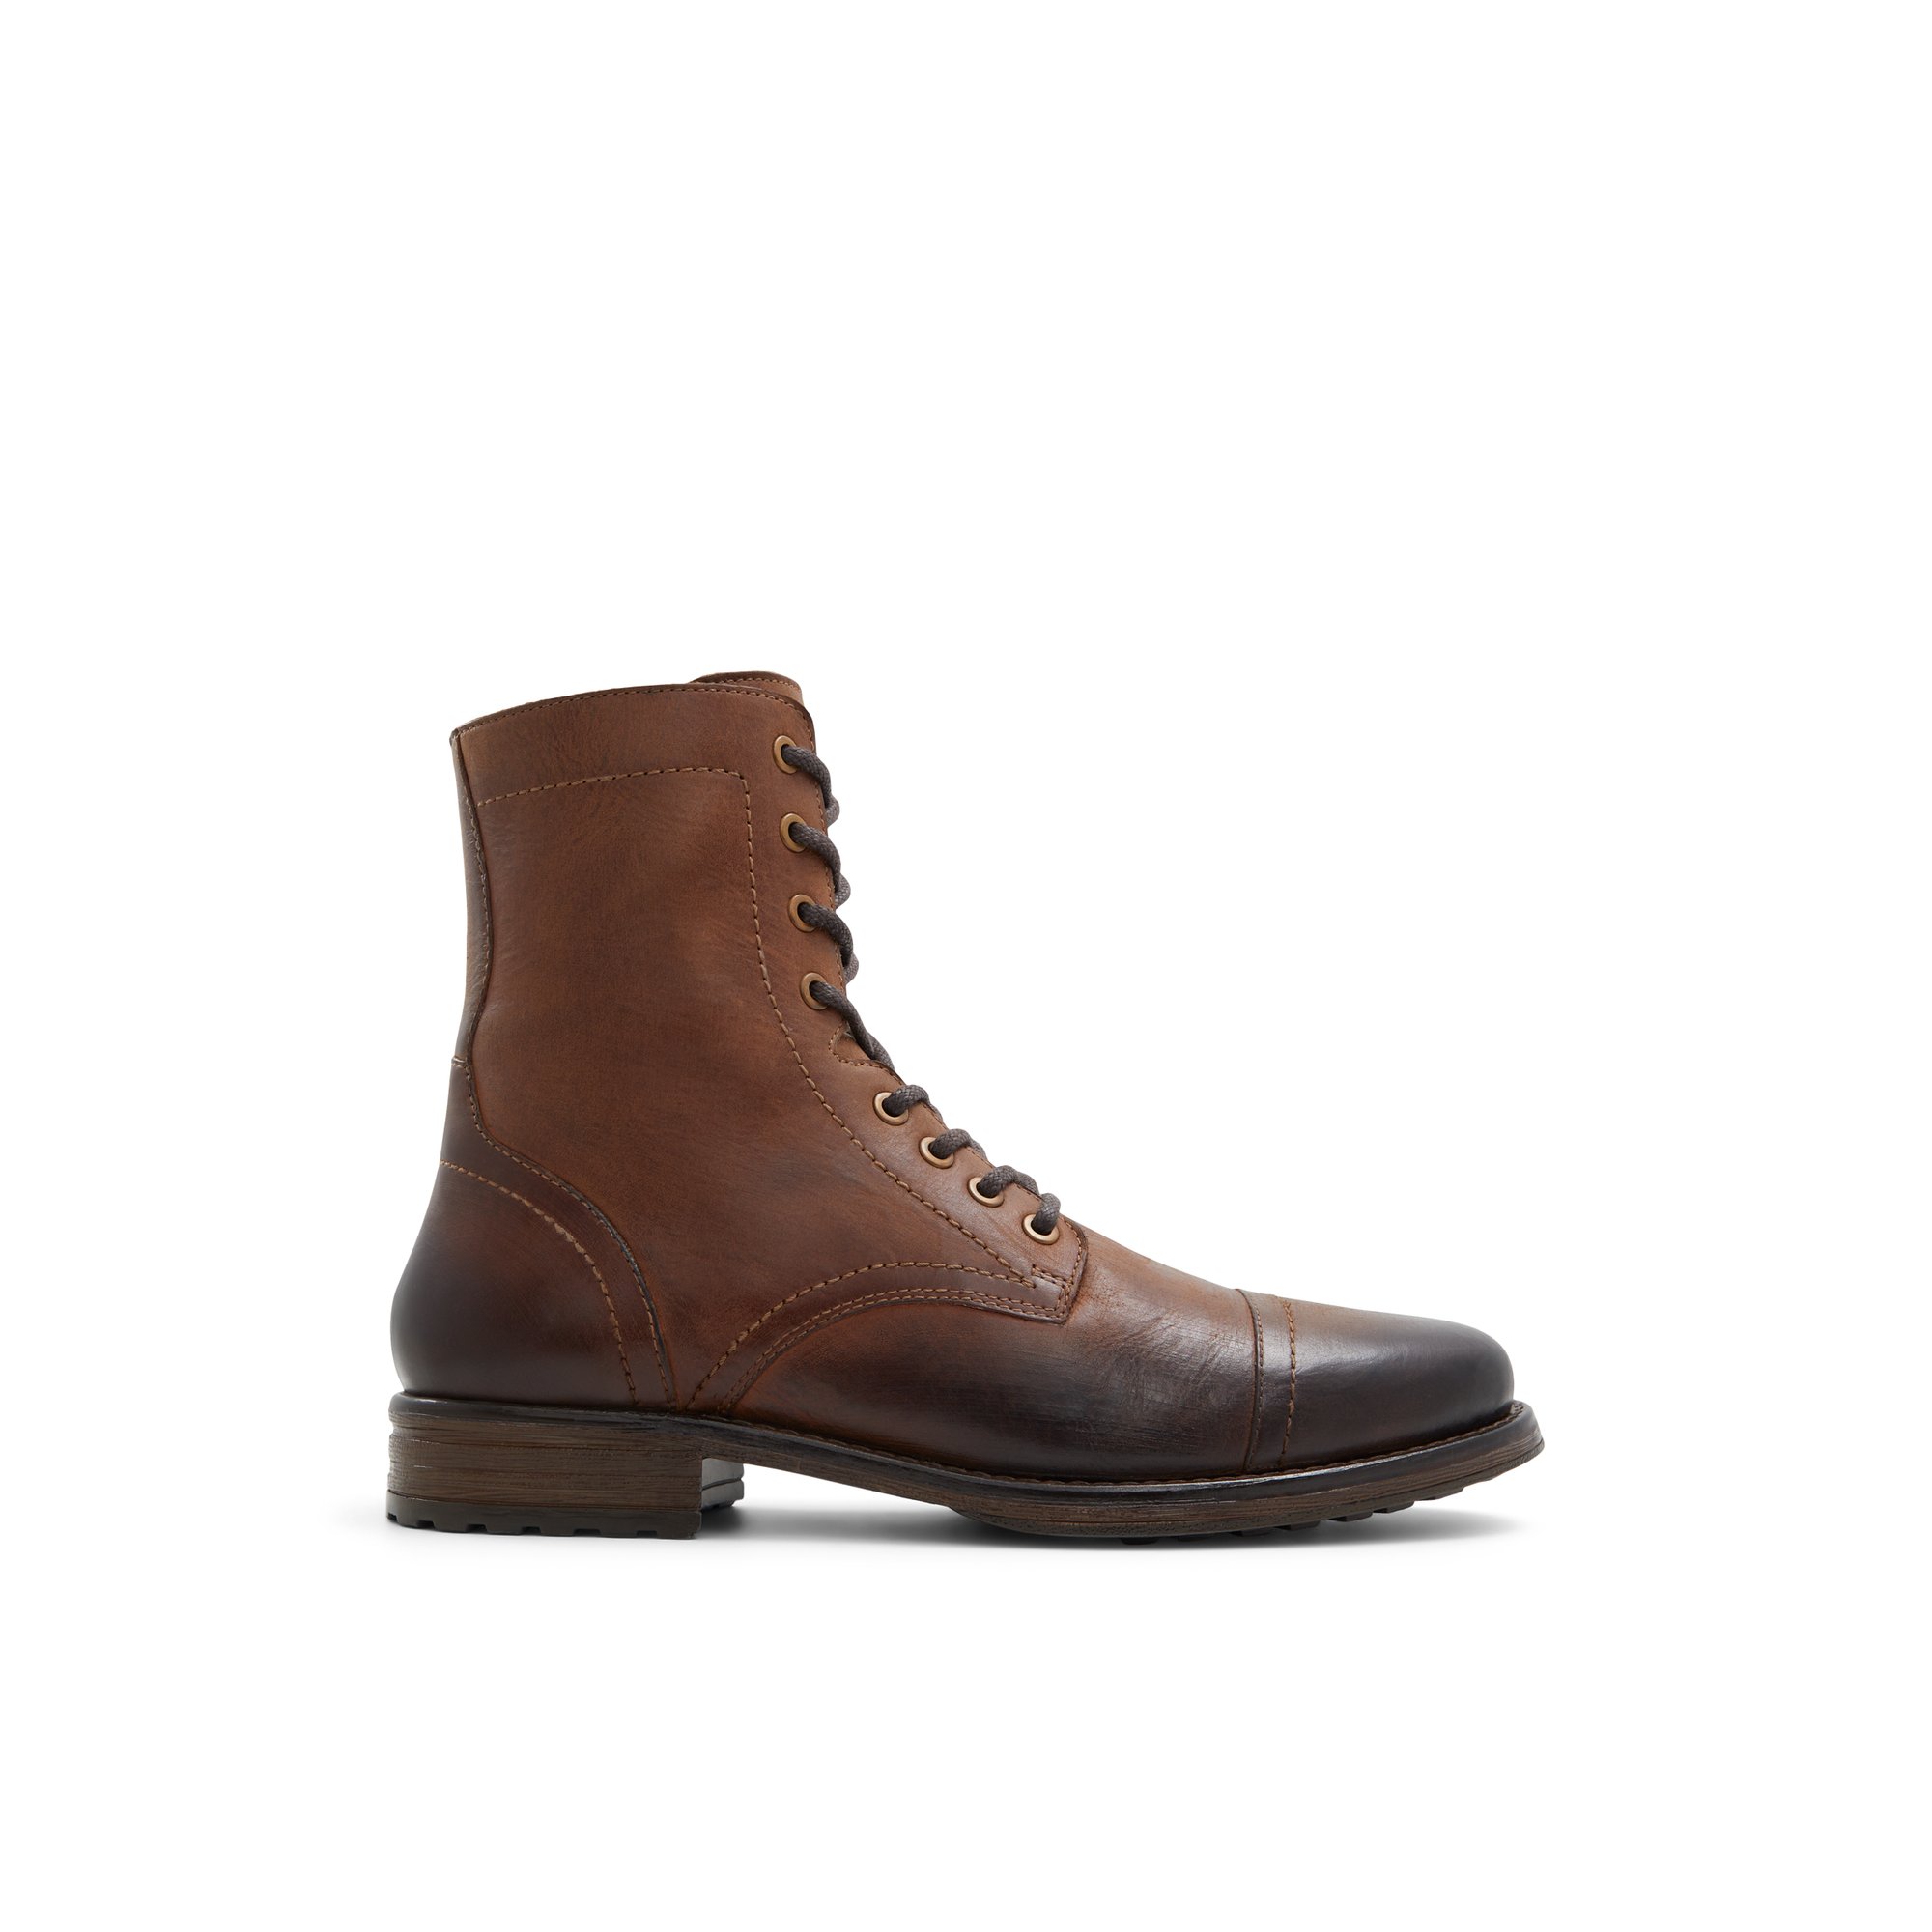 ALDO Okoto - Men's Boots - Brown